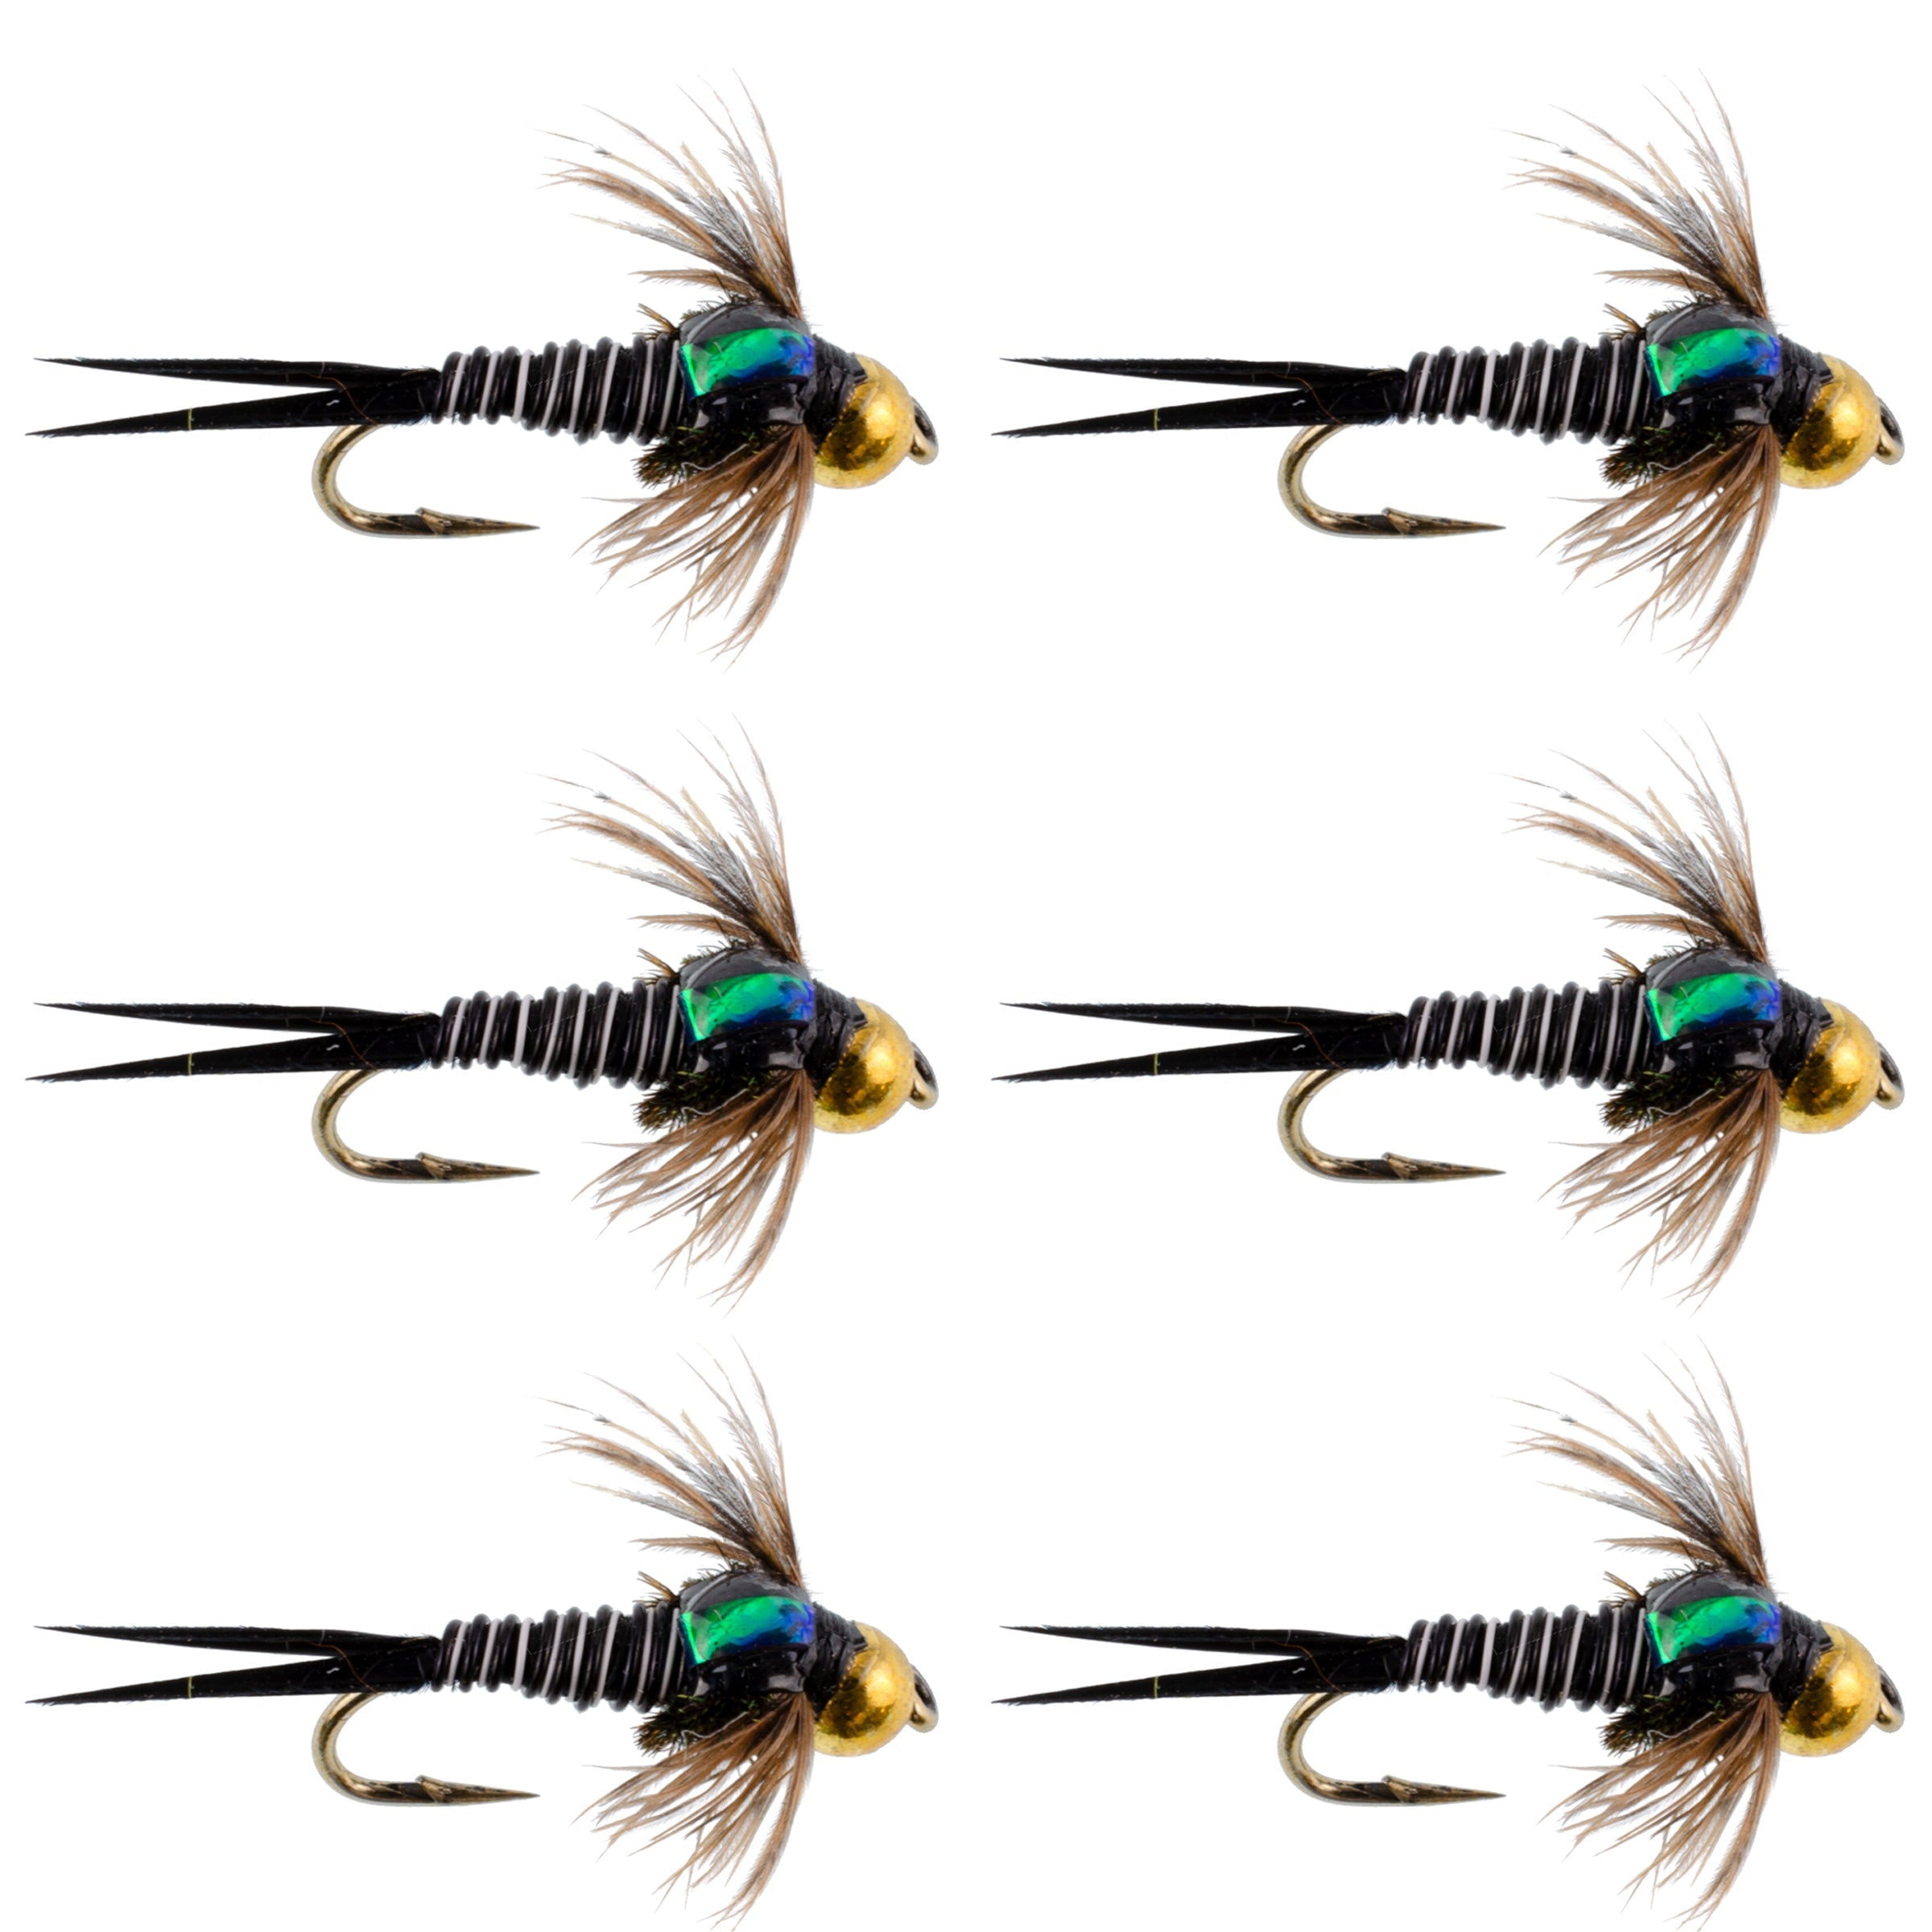 Bead Head Zebra Copper John Nymph Fly Fishing Flies - Set of 6 Flies Hook Size 12